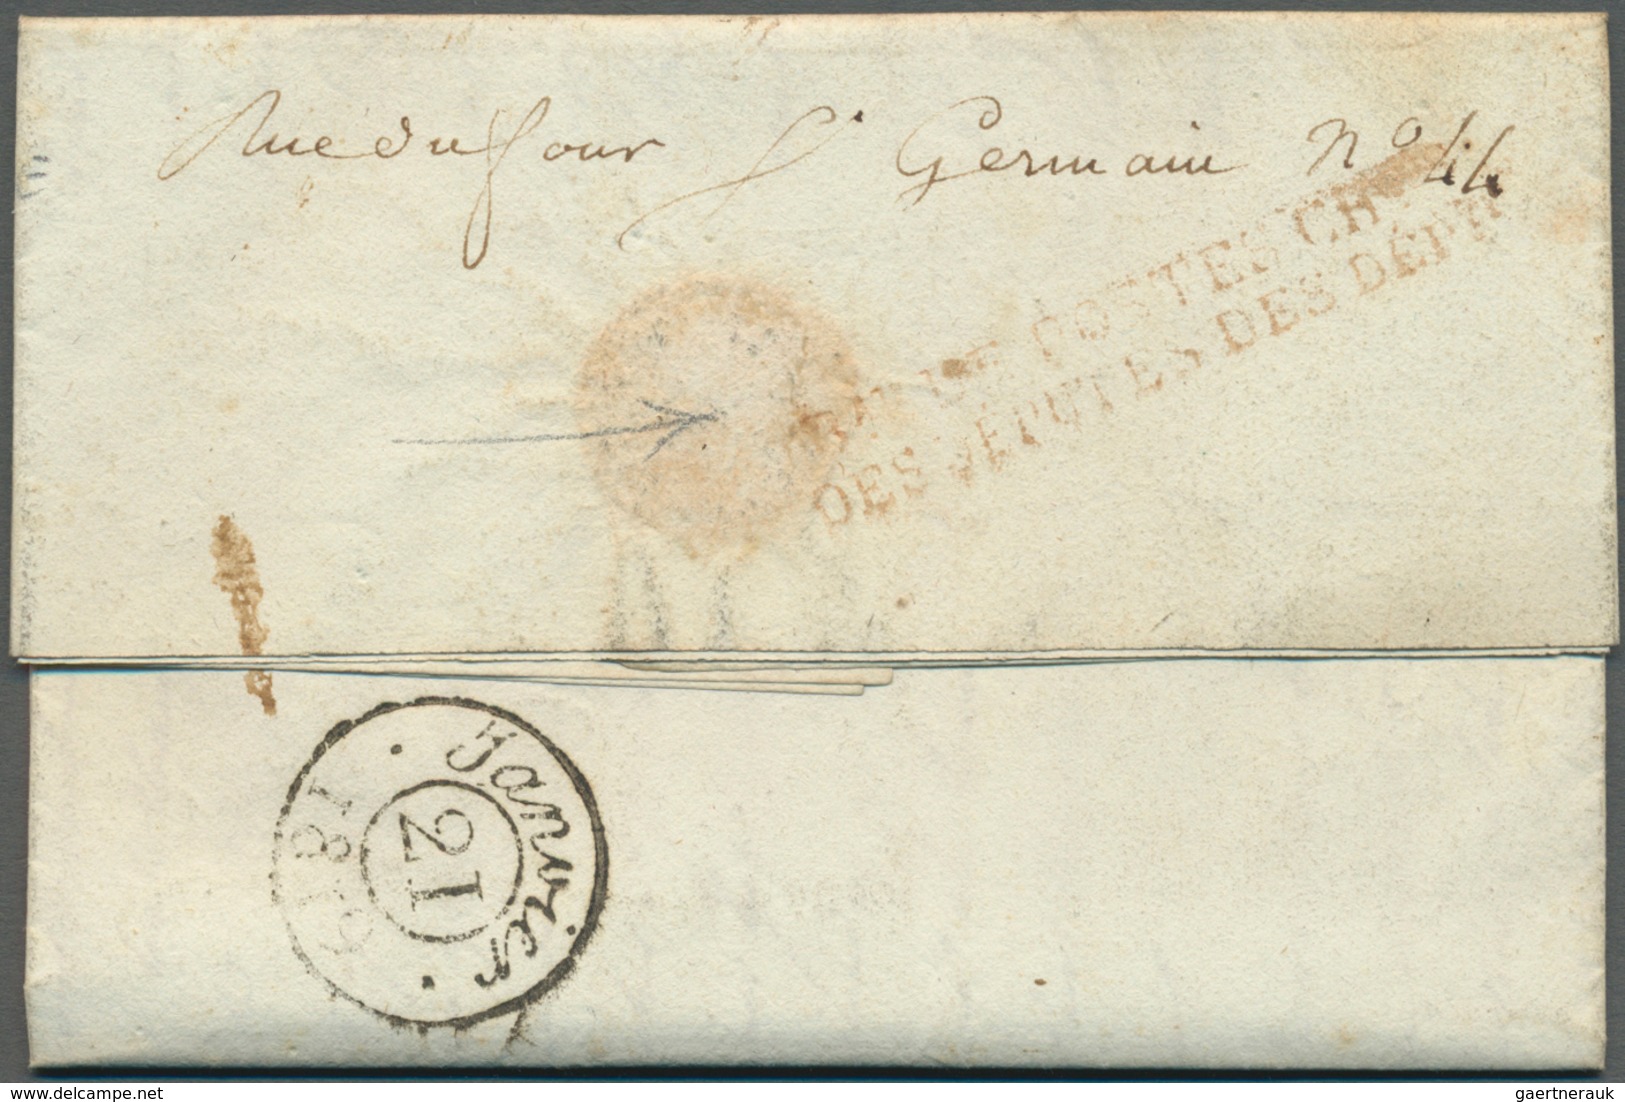 28631 Europa - West: 1893/1813, interessante Sammlung "Französische Armeepost" in Europa mit ca. 70 Briefe